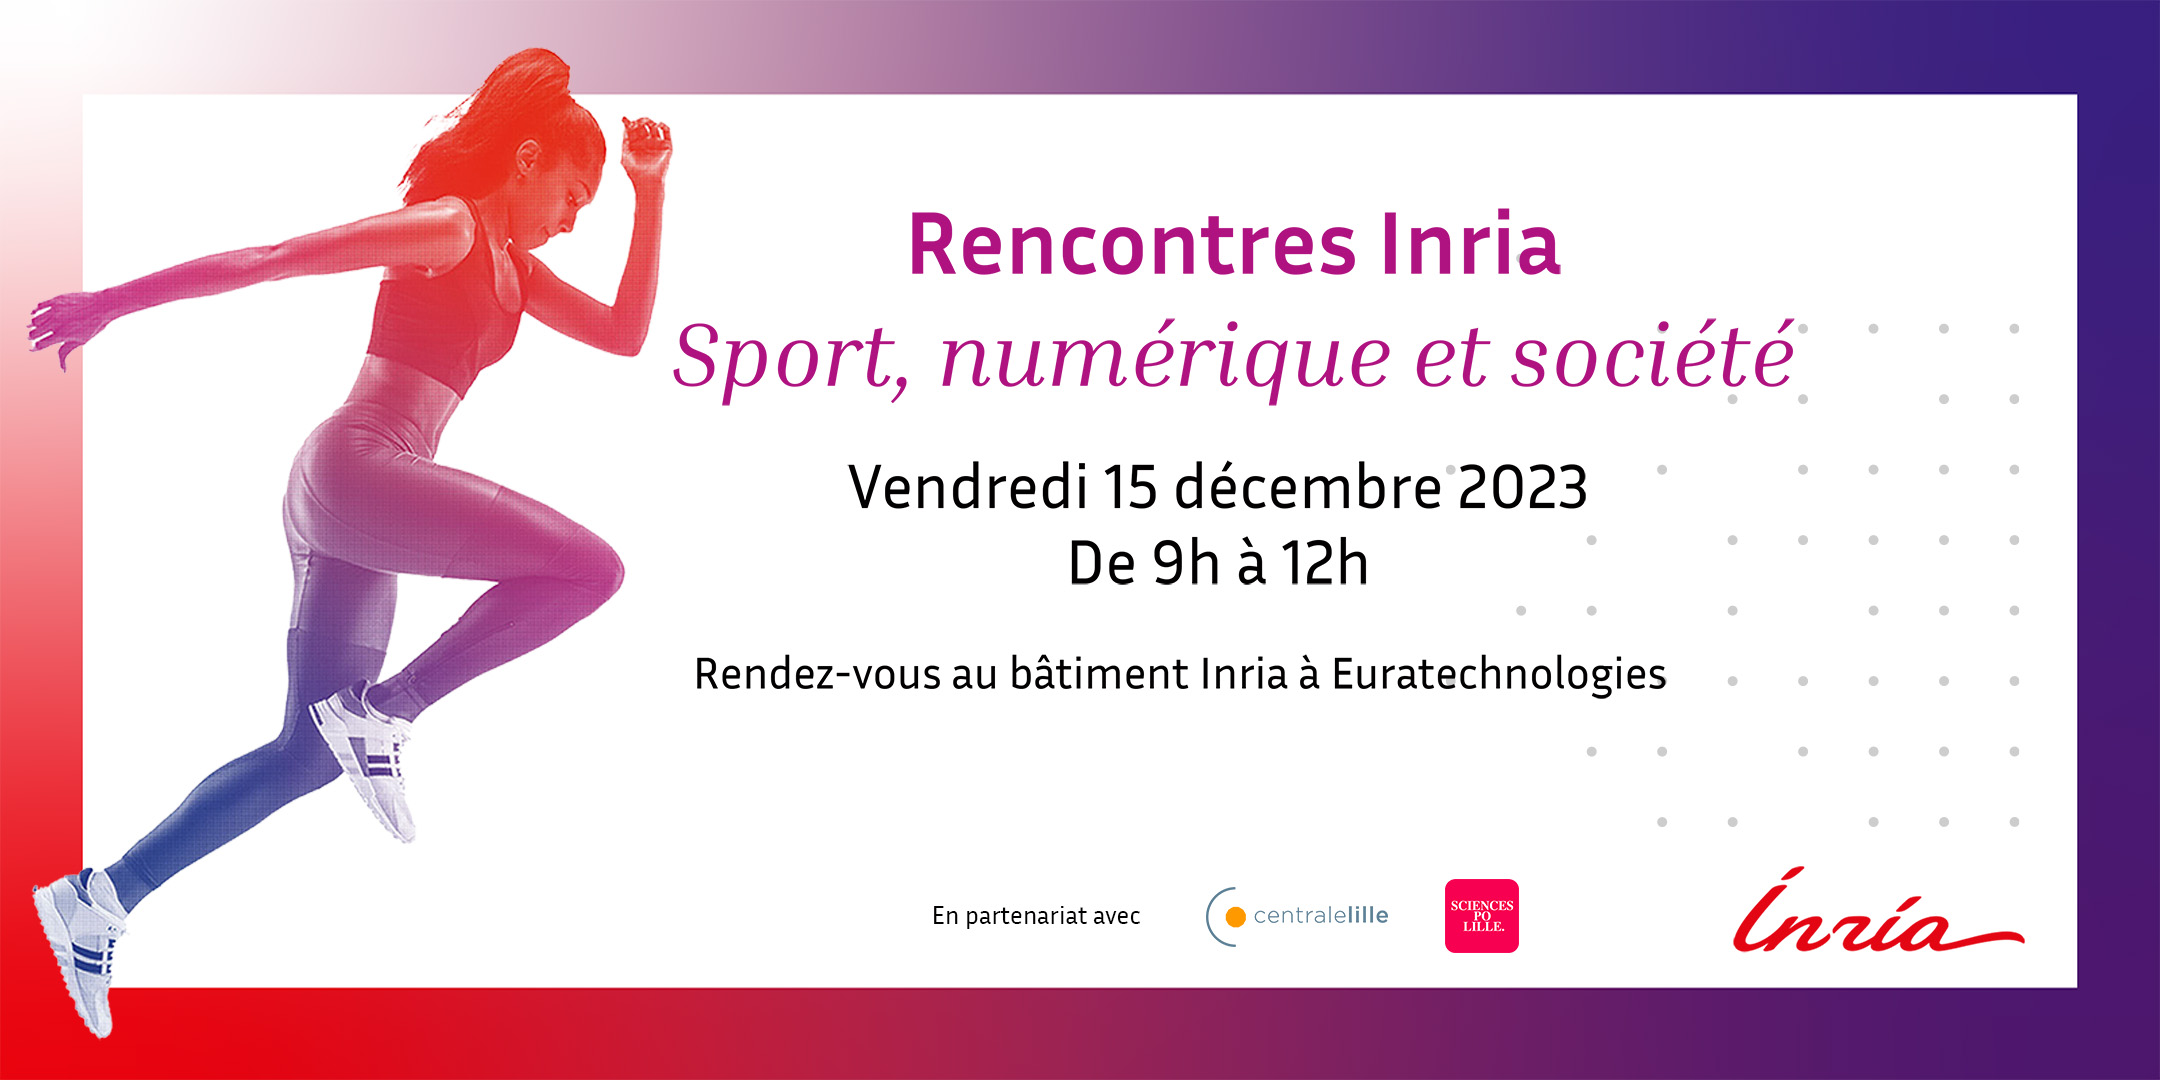 Rencontres Inria "Sport, numérique et société"